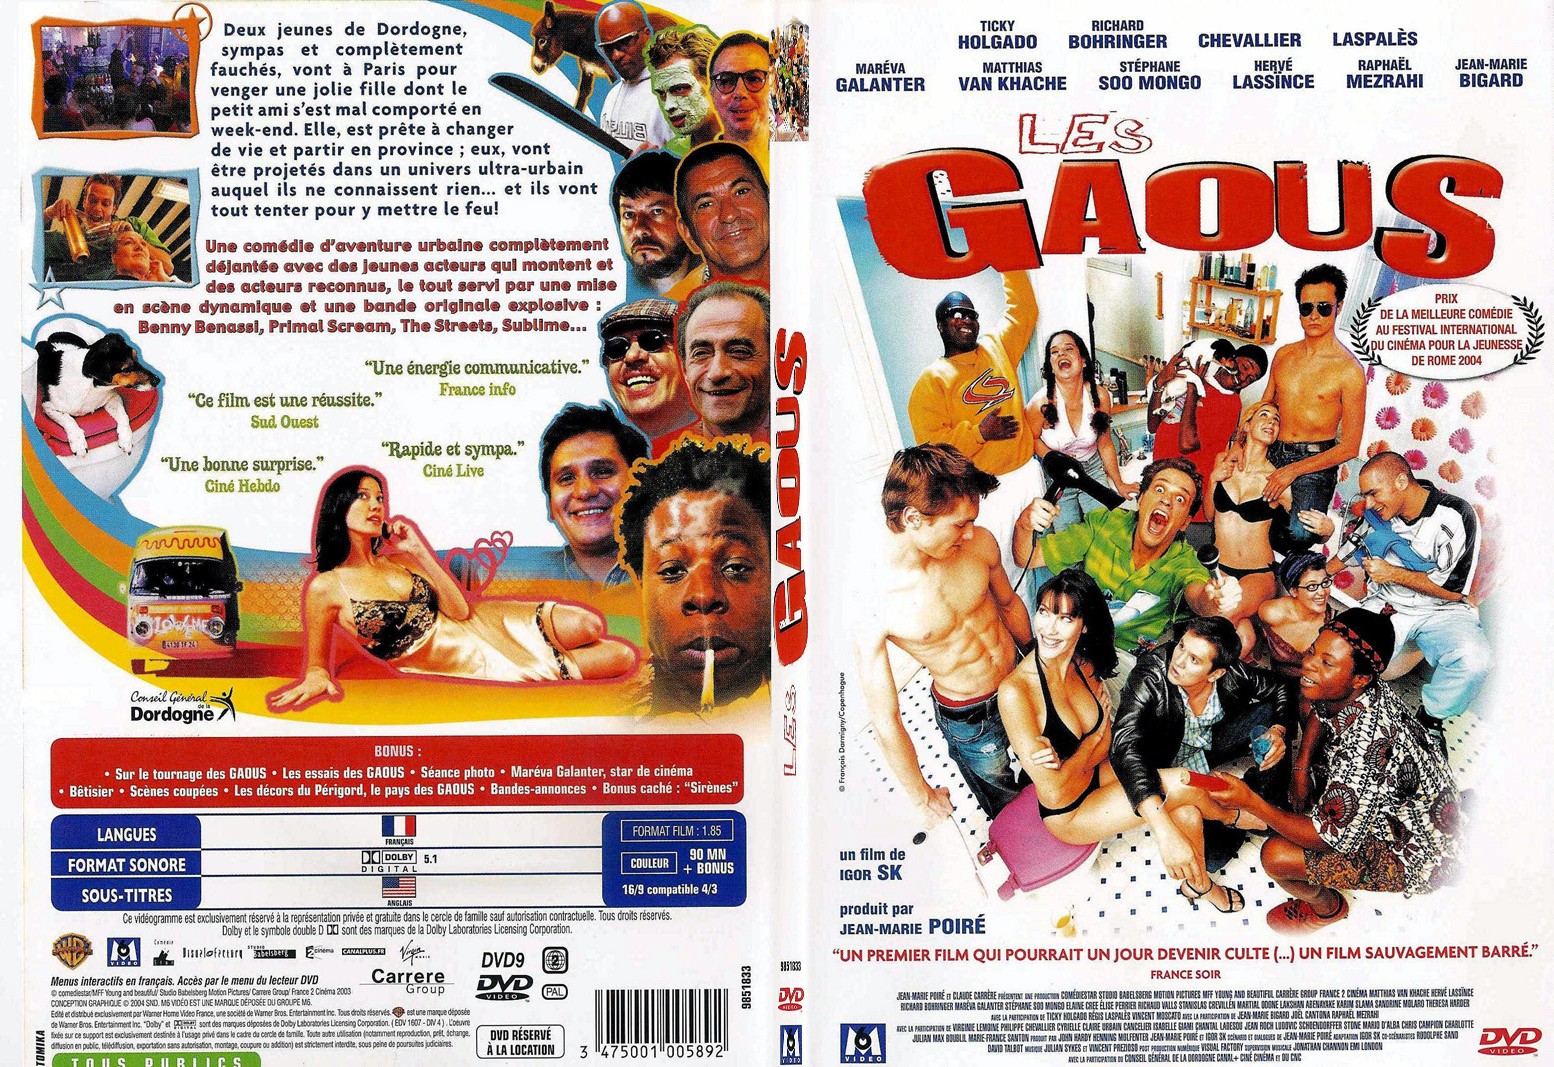 Jaquette DVD Les gaous - SLIM